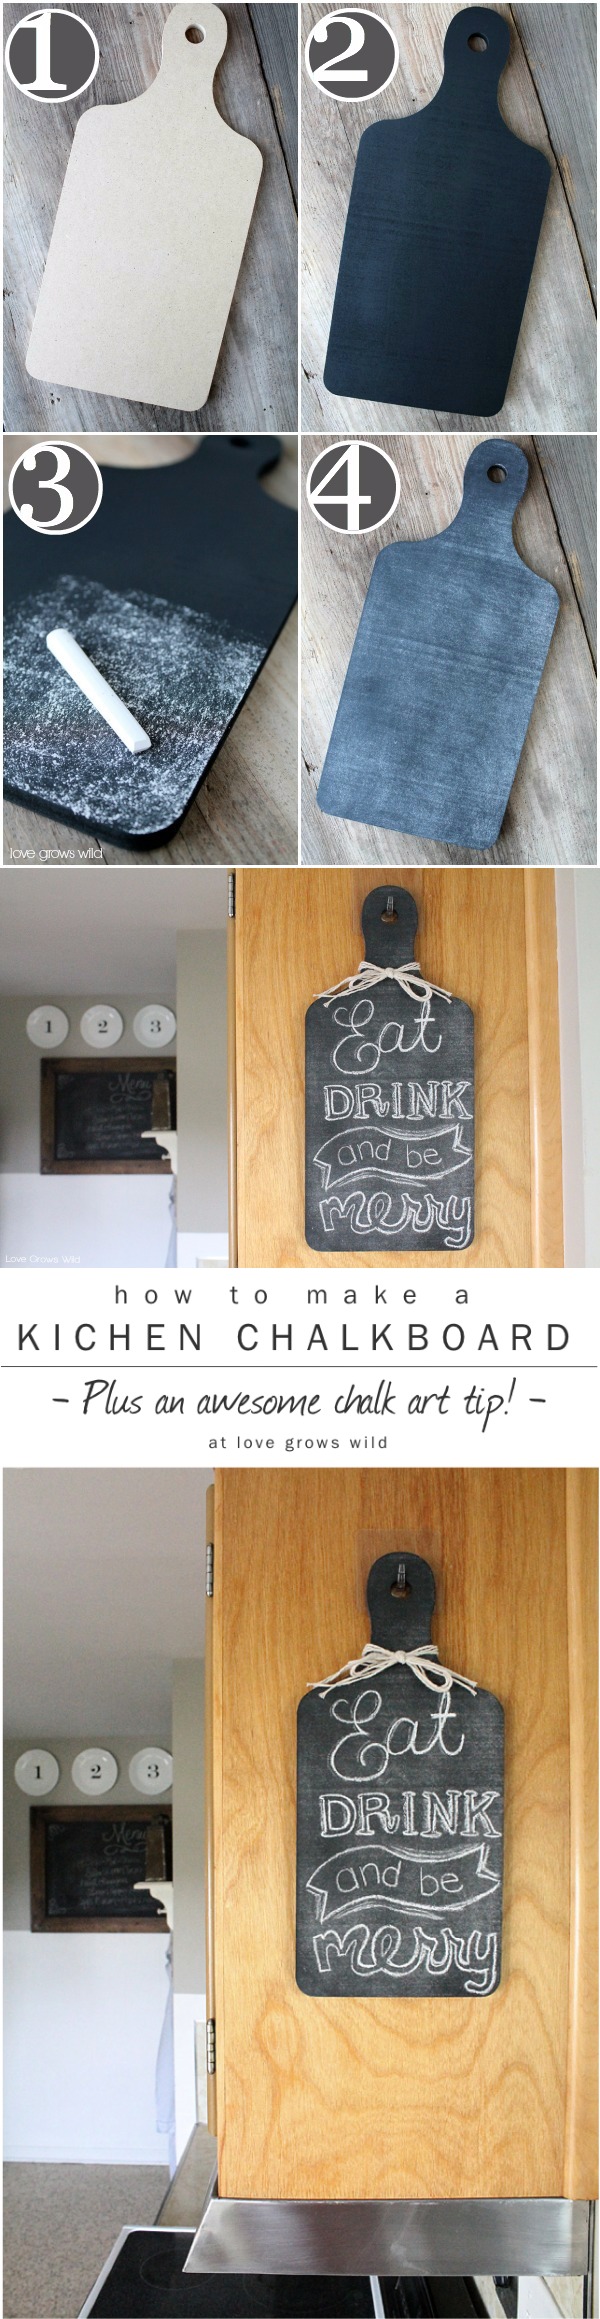 DIY Kitchen Chalkboard